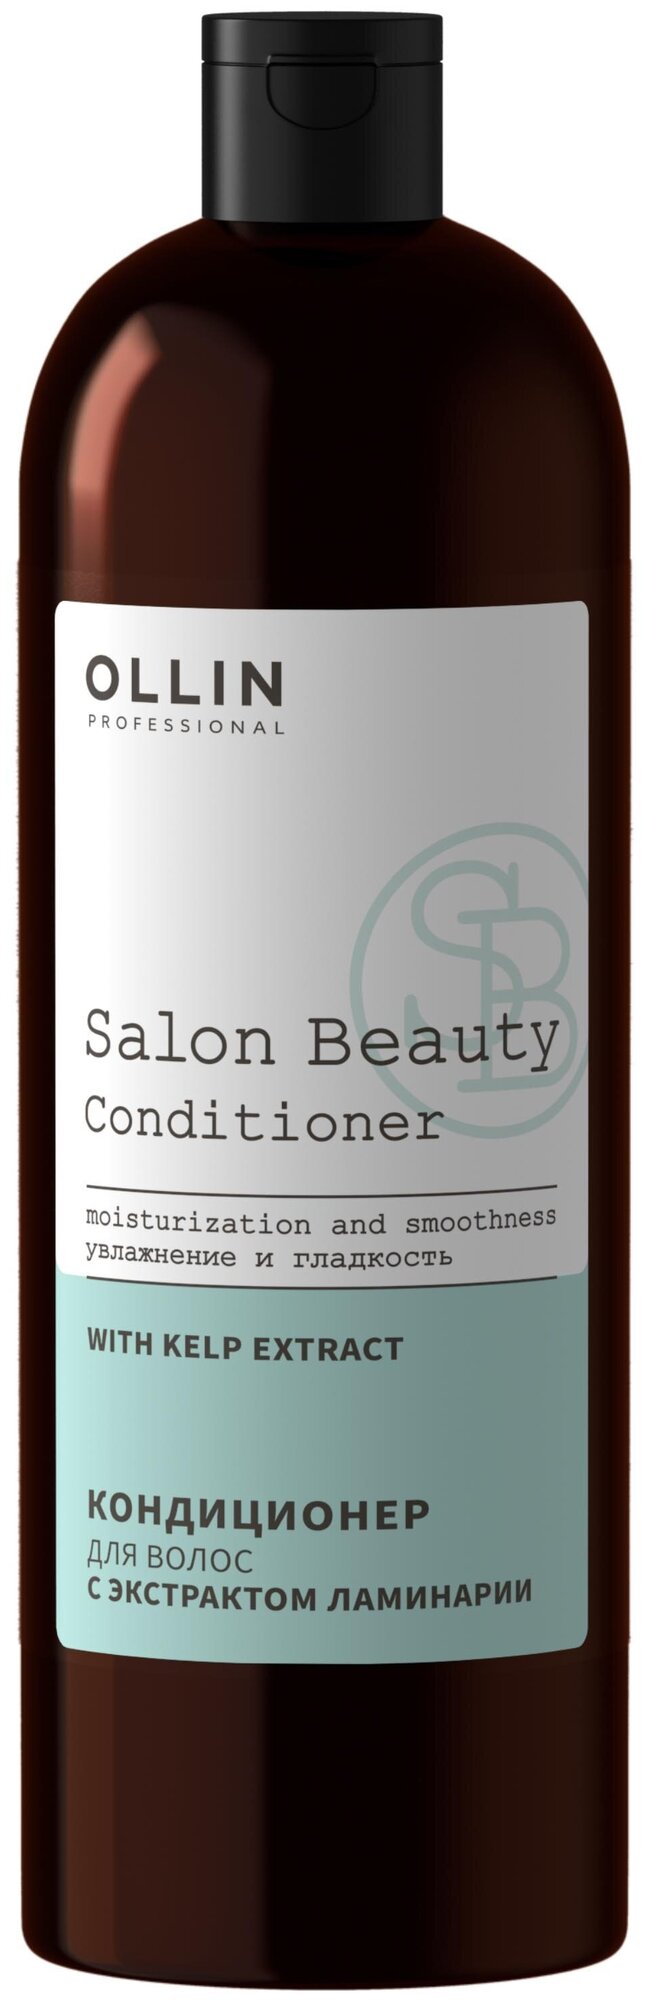 OLLIN PROFESSIONAL Кондиционер для волос с экстрактом ламинарии 1000 мл